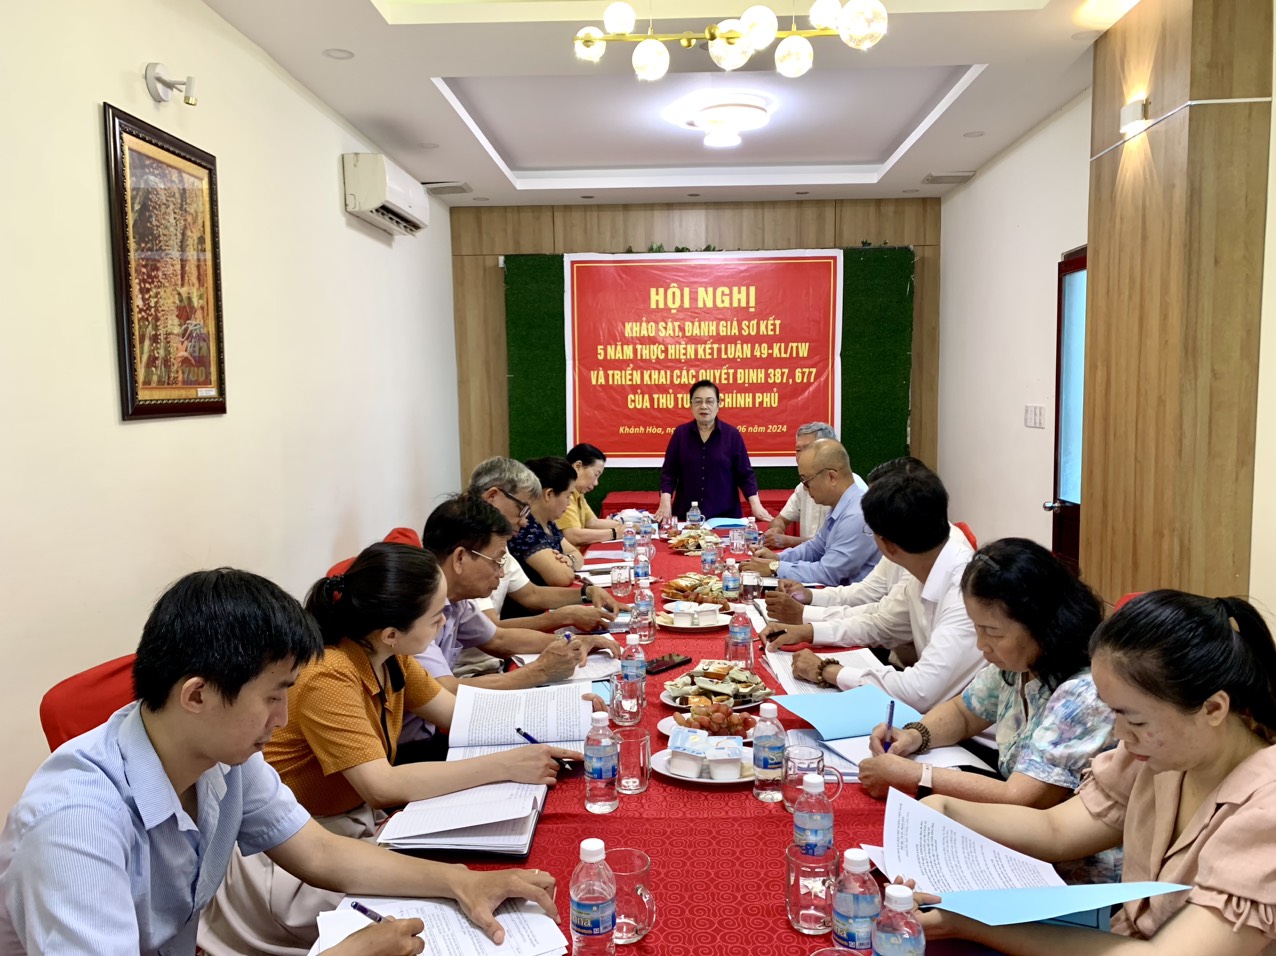 Hội Khuyến học Việt Nam kiểm tra, khảo sát việc sơ kết 5 năm thực hiện Kết luận 49 và triển khai Quyết định 387, 677 của Thủ tướng Chính phủ tại Khánh Hòa